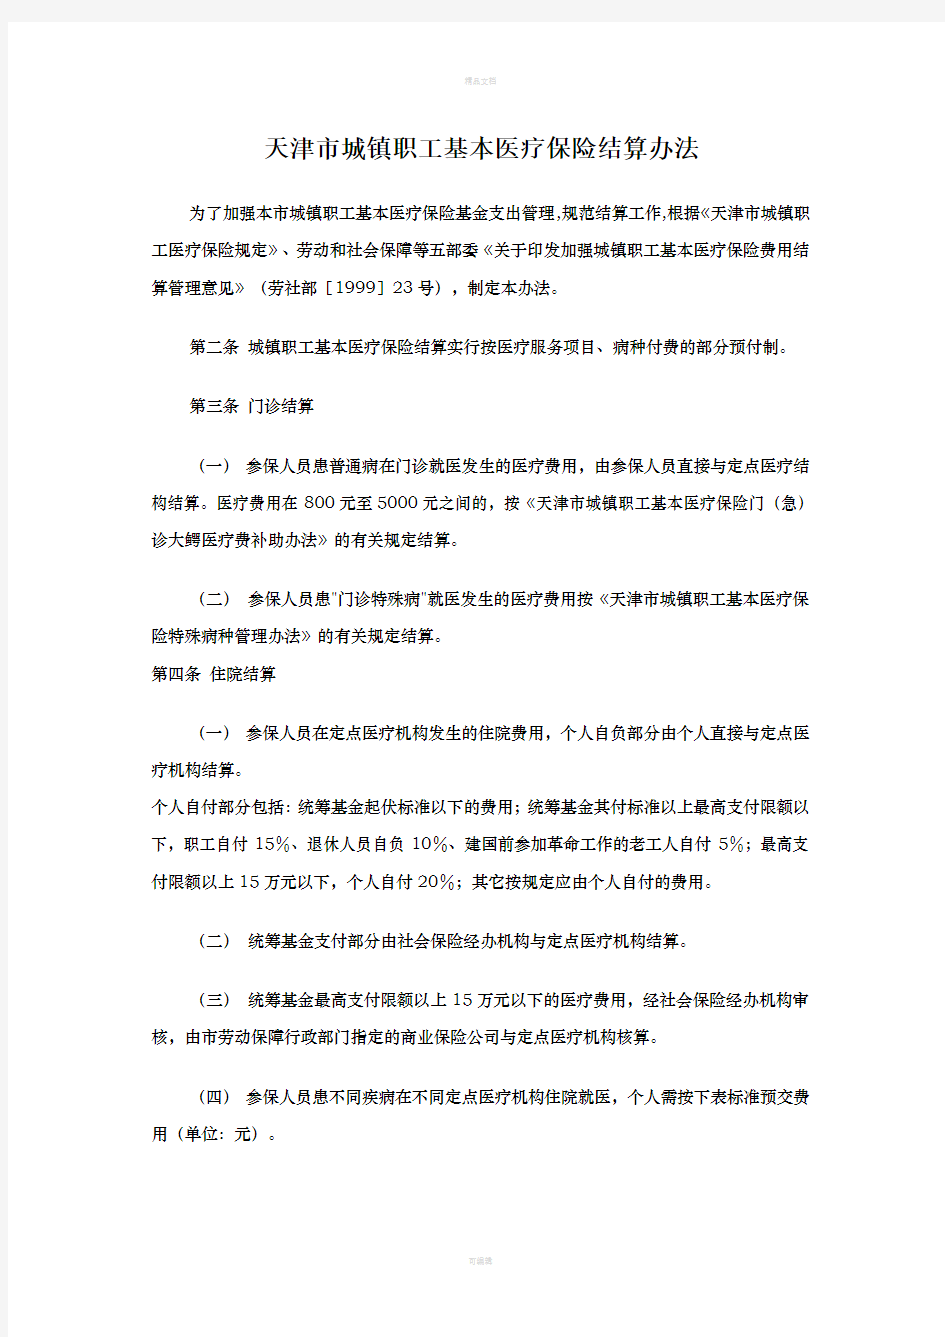 天津市城镇职工基本医疗保险结算办法